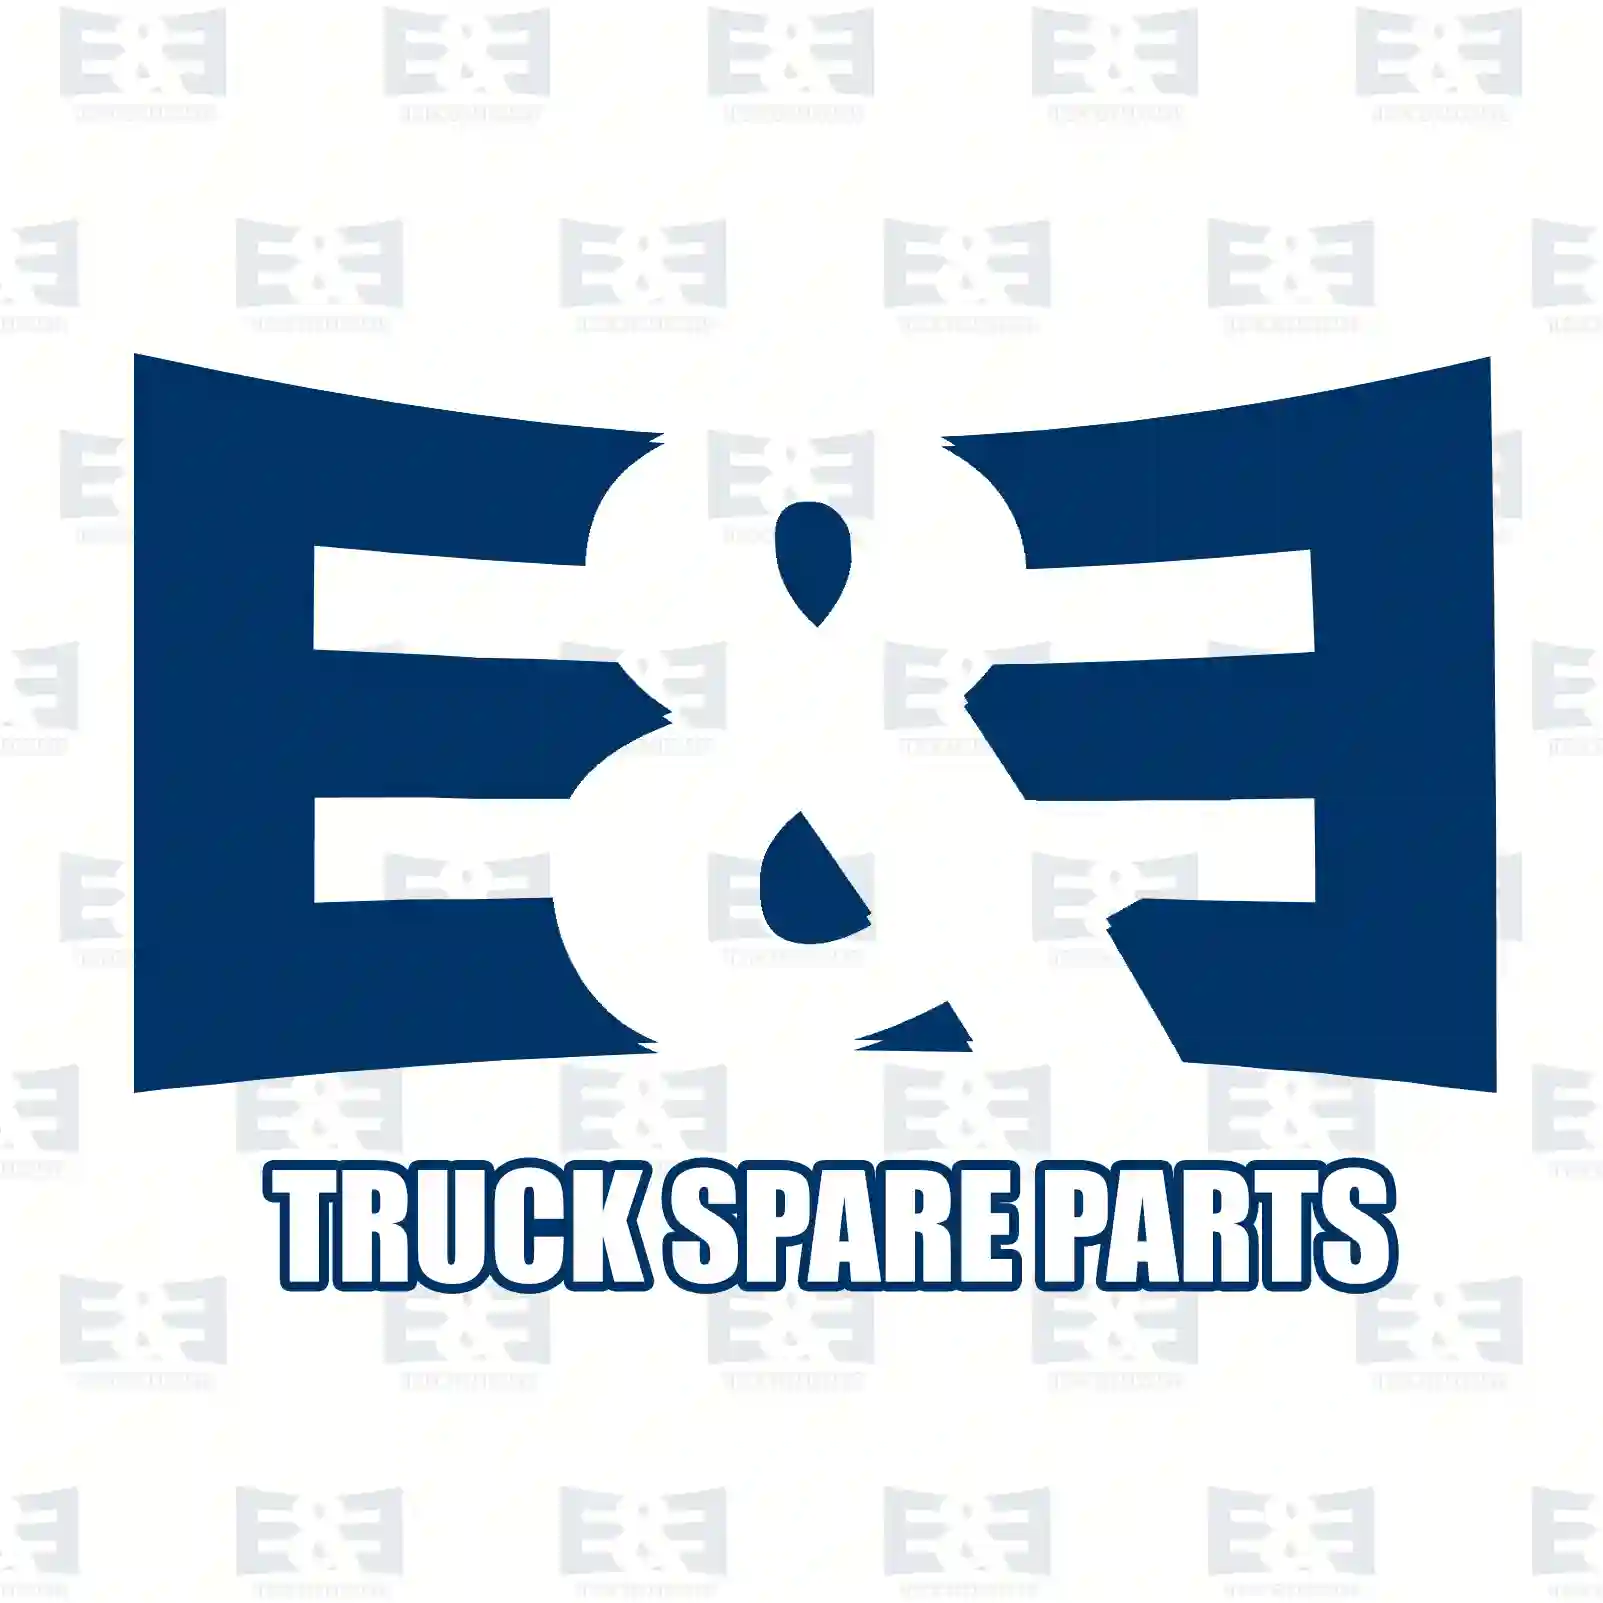 Feed pump, 2E2286977, 1332609, ZG10404-0008 ||  2E2286977 E&E Truck Spare Parts | Truck Spare Parts, Auotomotive Spare Parts Feed pump, 2E2286977, 1332609, ZG10404-0008 ||  2E2286977 E&E Truck Spare Parts | Truck Spare Parts, Auotomotive Spare Parts